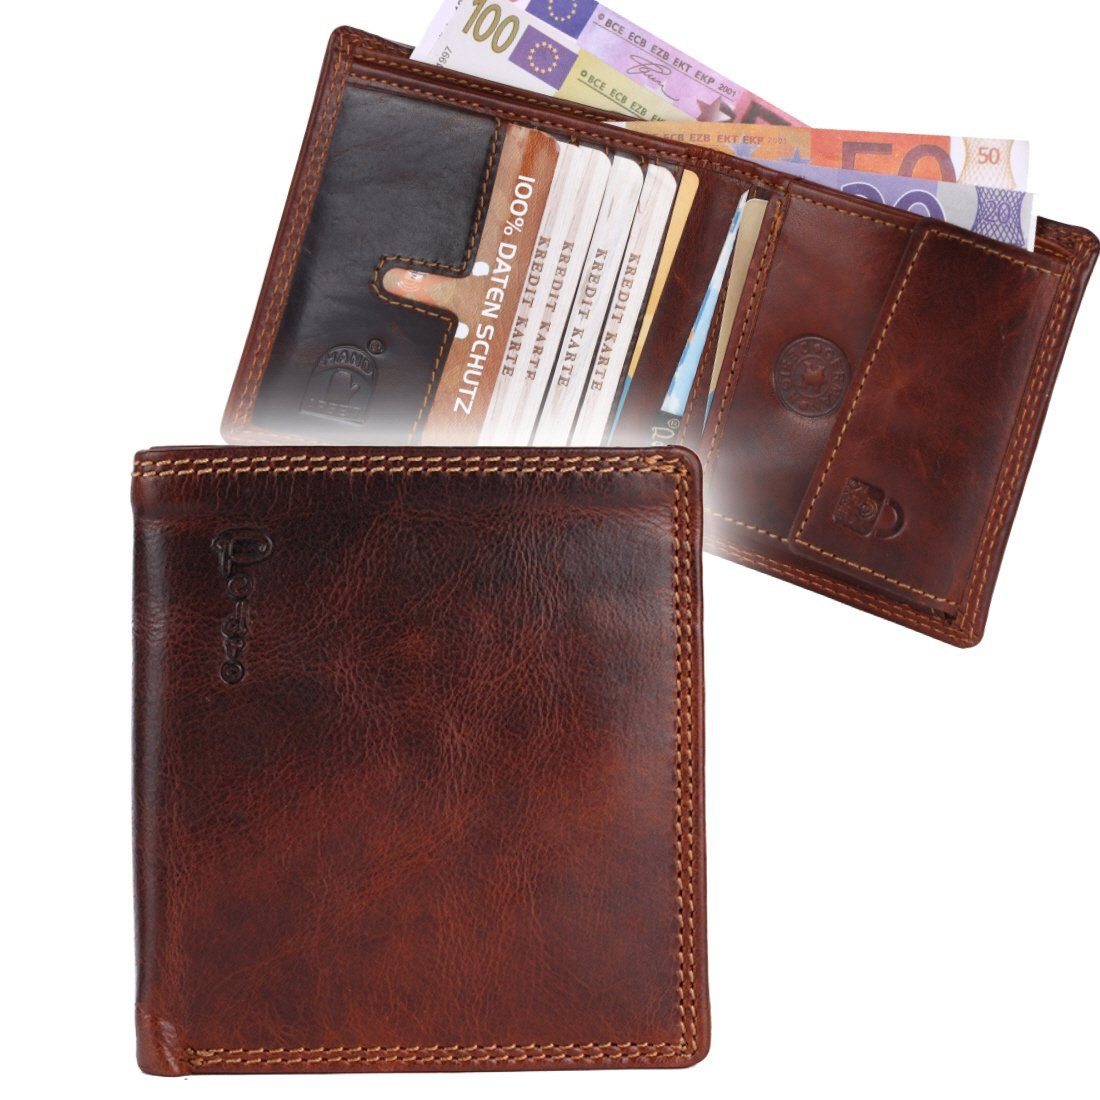 SHG Geldbörse Herren Leder Portemonnaie Brieftasche Börse Geldbeutel Männerbörse, Münzfach, Druckknopfverschluss, Kreditkartenfächer, RFID Schutz